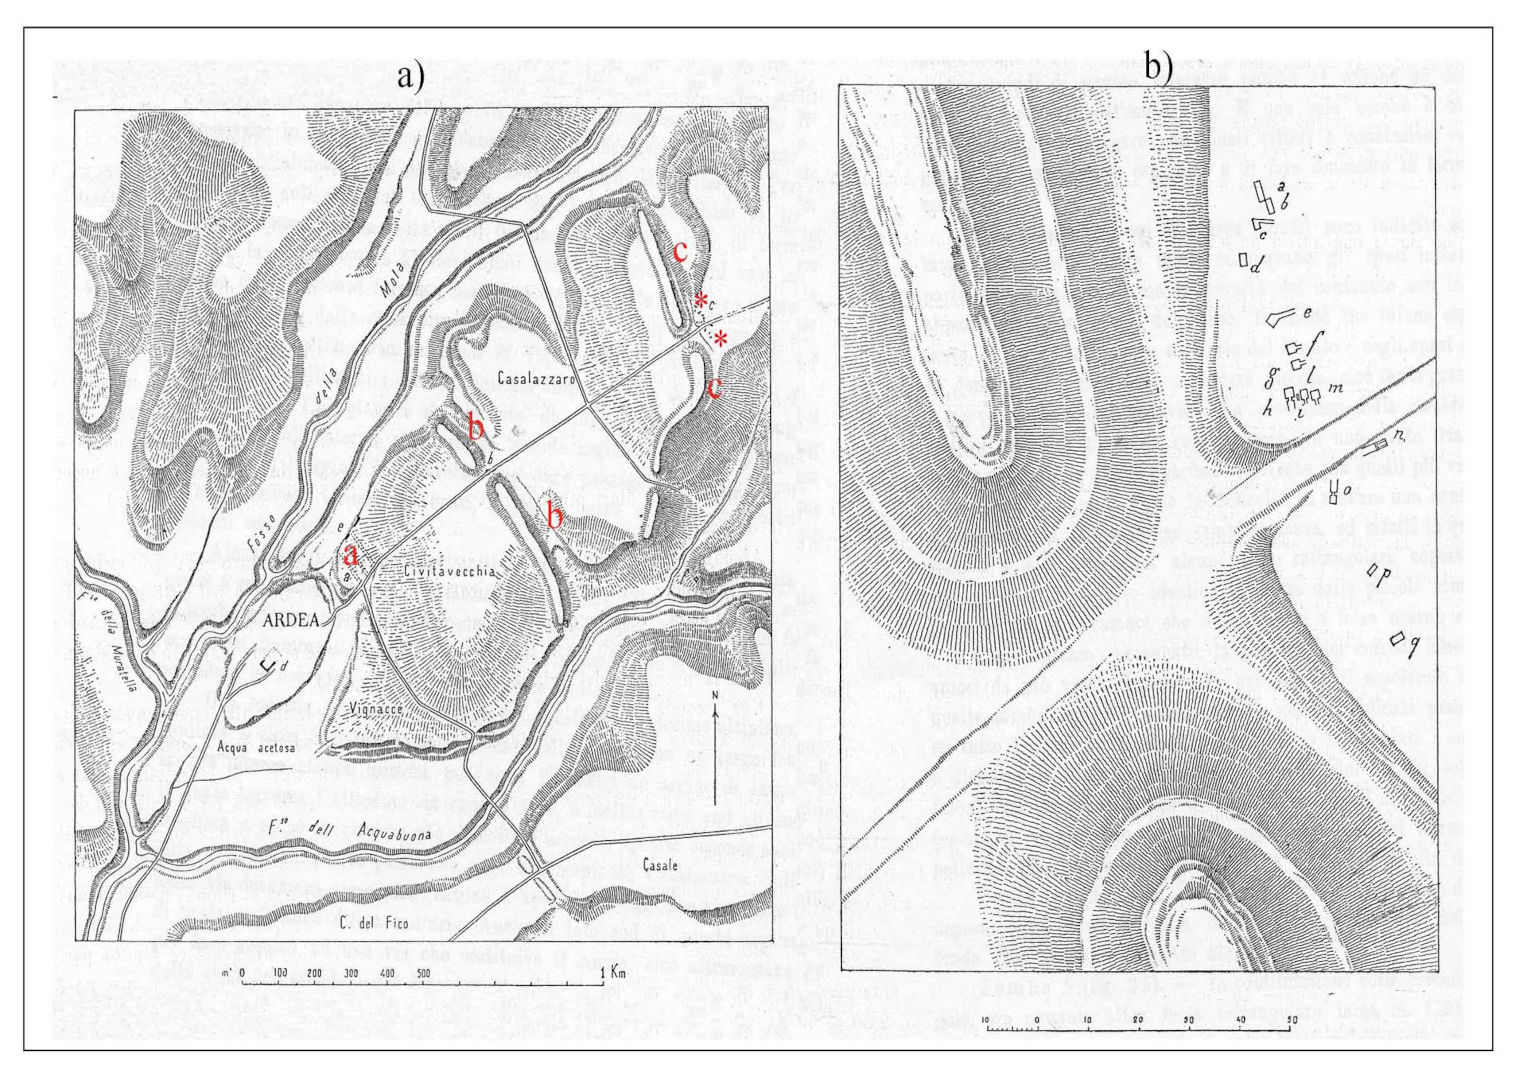 Fig. 9 - a) La necropoli (in asterisco) oltre l'ultimo agger (c ); b) distribuzione schematica delle tombe (da Pasqui 1900). Foto cortesia di Sonia Modica